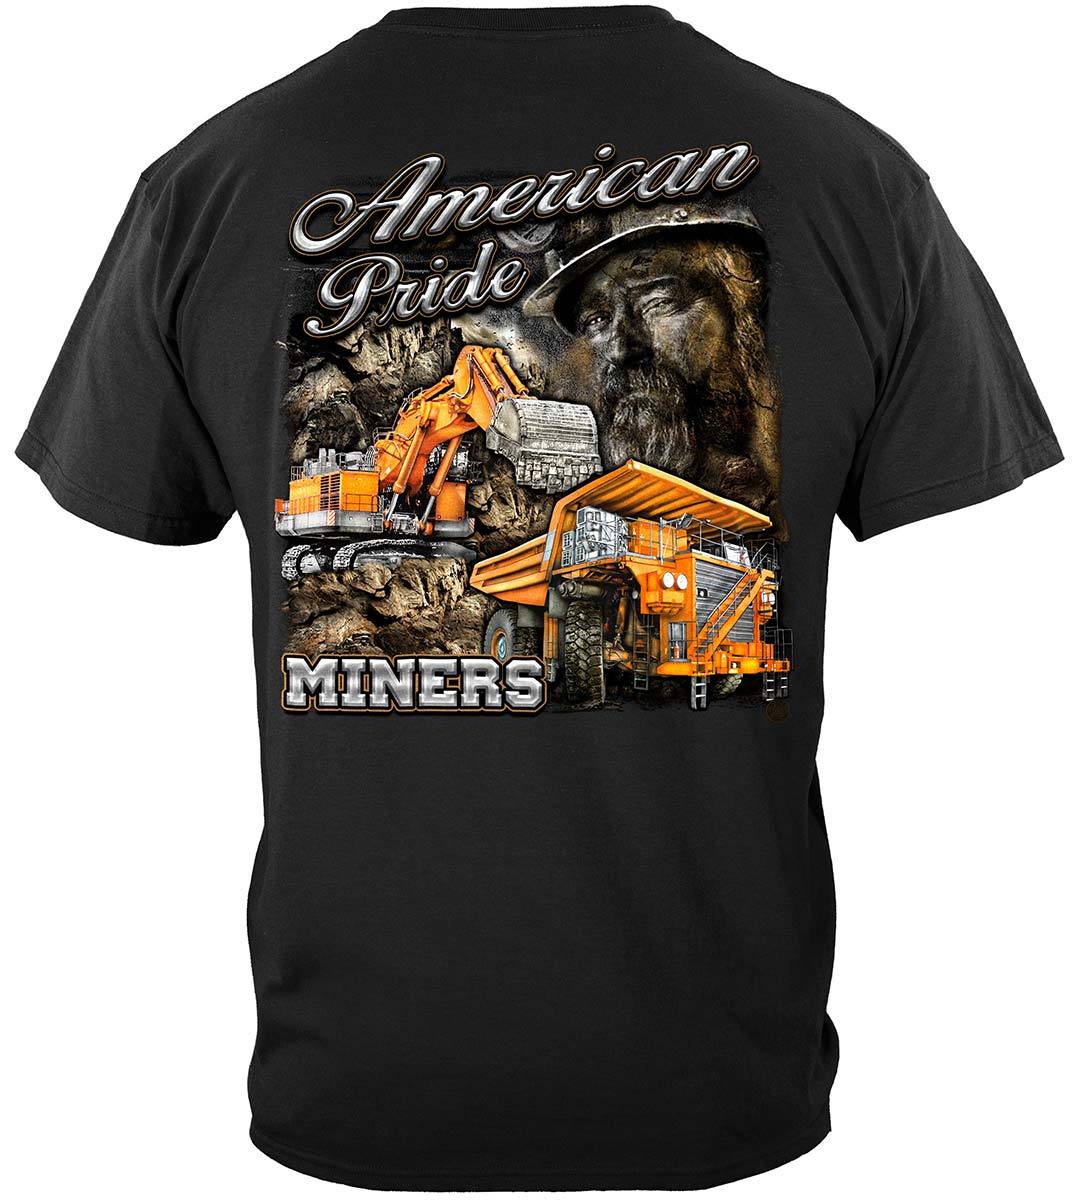 American Pride Miners Premium Long Sleeves